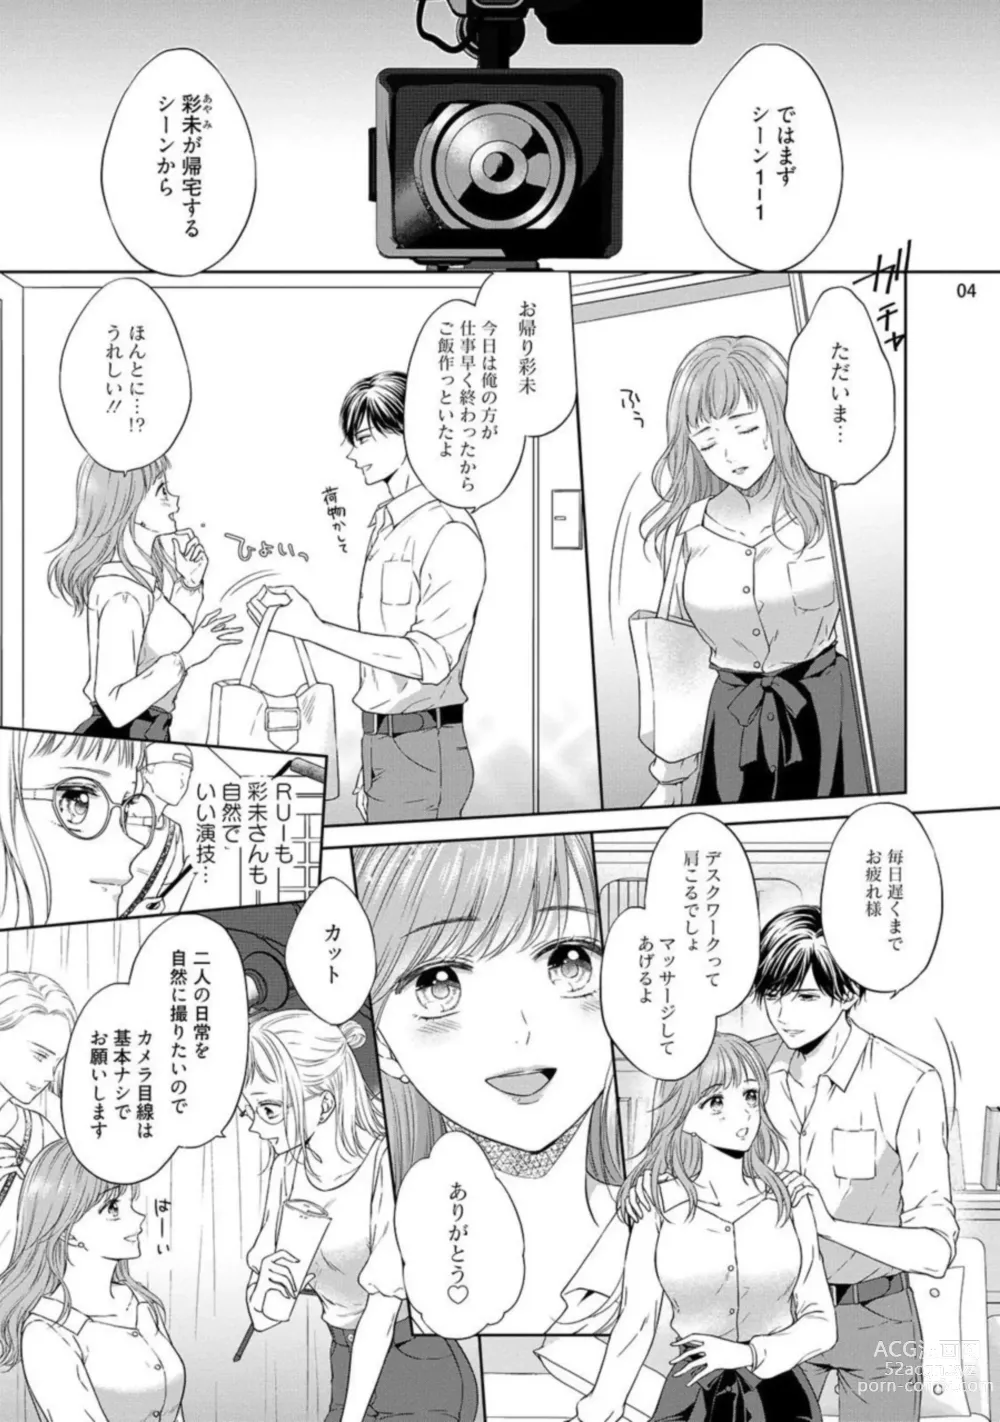 Page 5 of manga Erotikkufirumu Shojo Kantoku wa Sekushī Danyū no Gokujō Teku ni Nurete 3